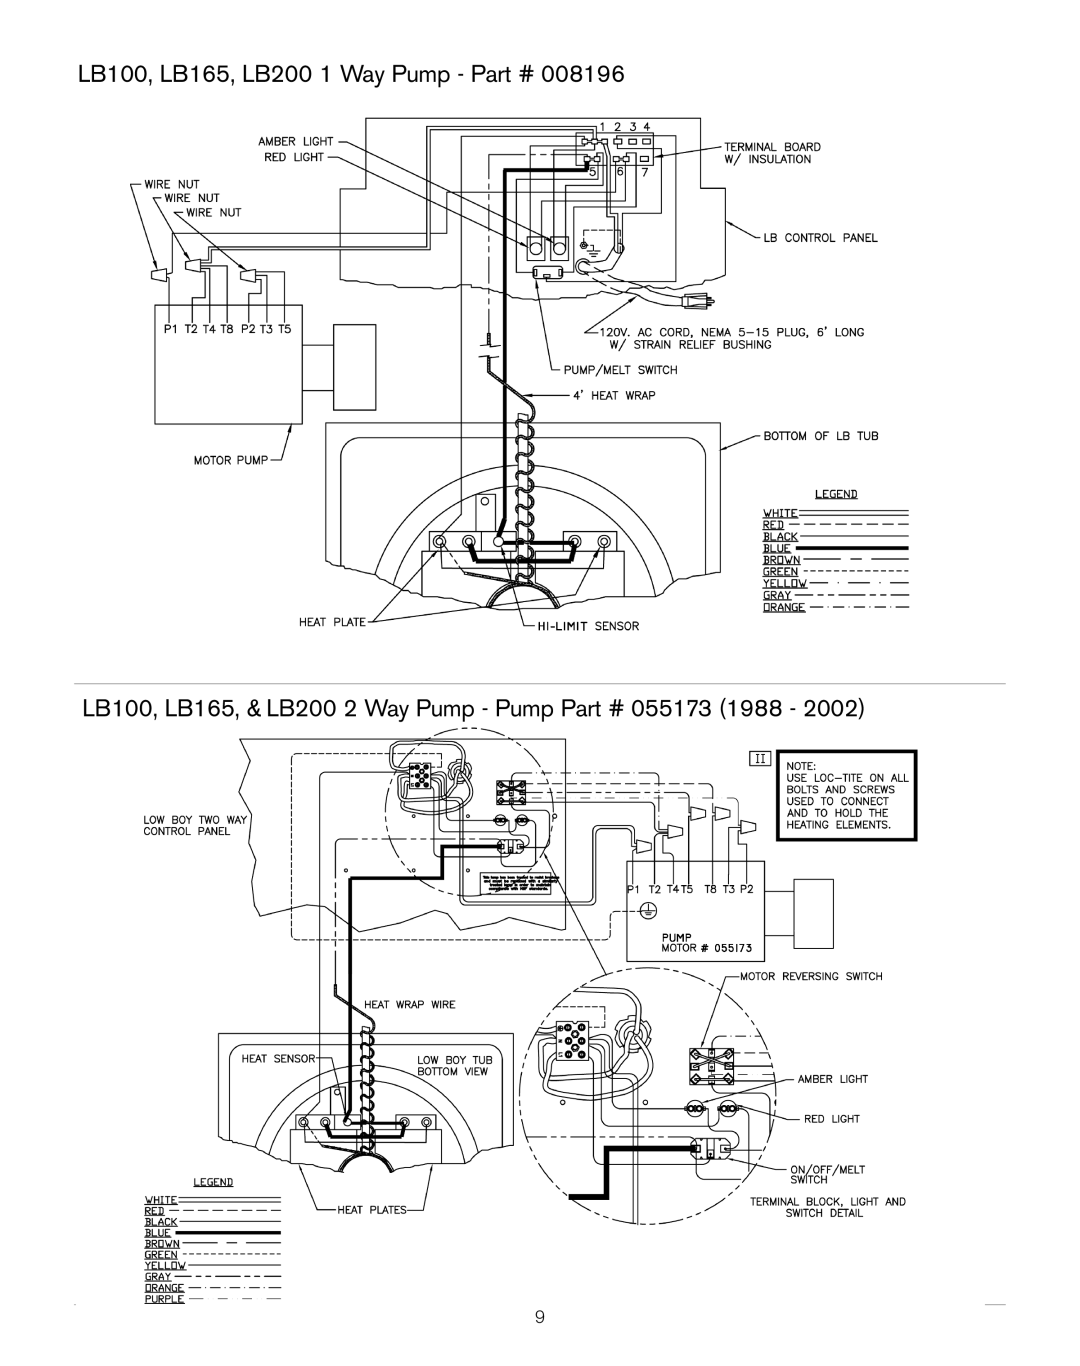 Keating Of Chicago LB-165, LB-100, PC14 owner manual LB100, LB165, LB200 1 Way Pump 